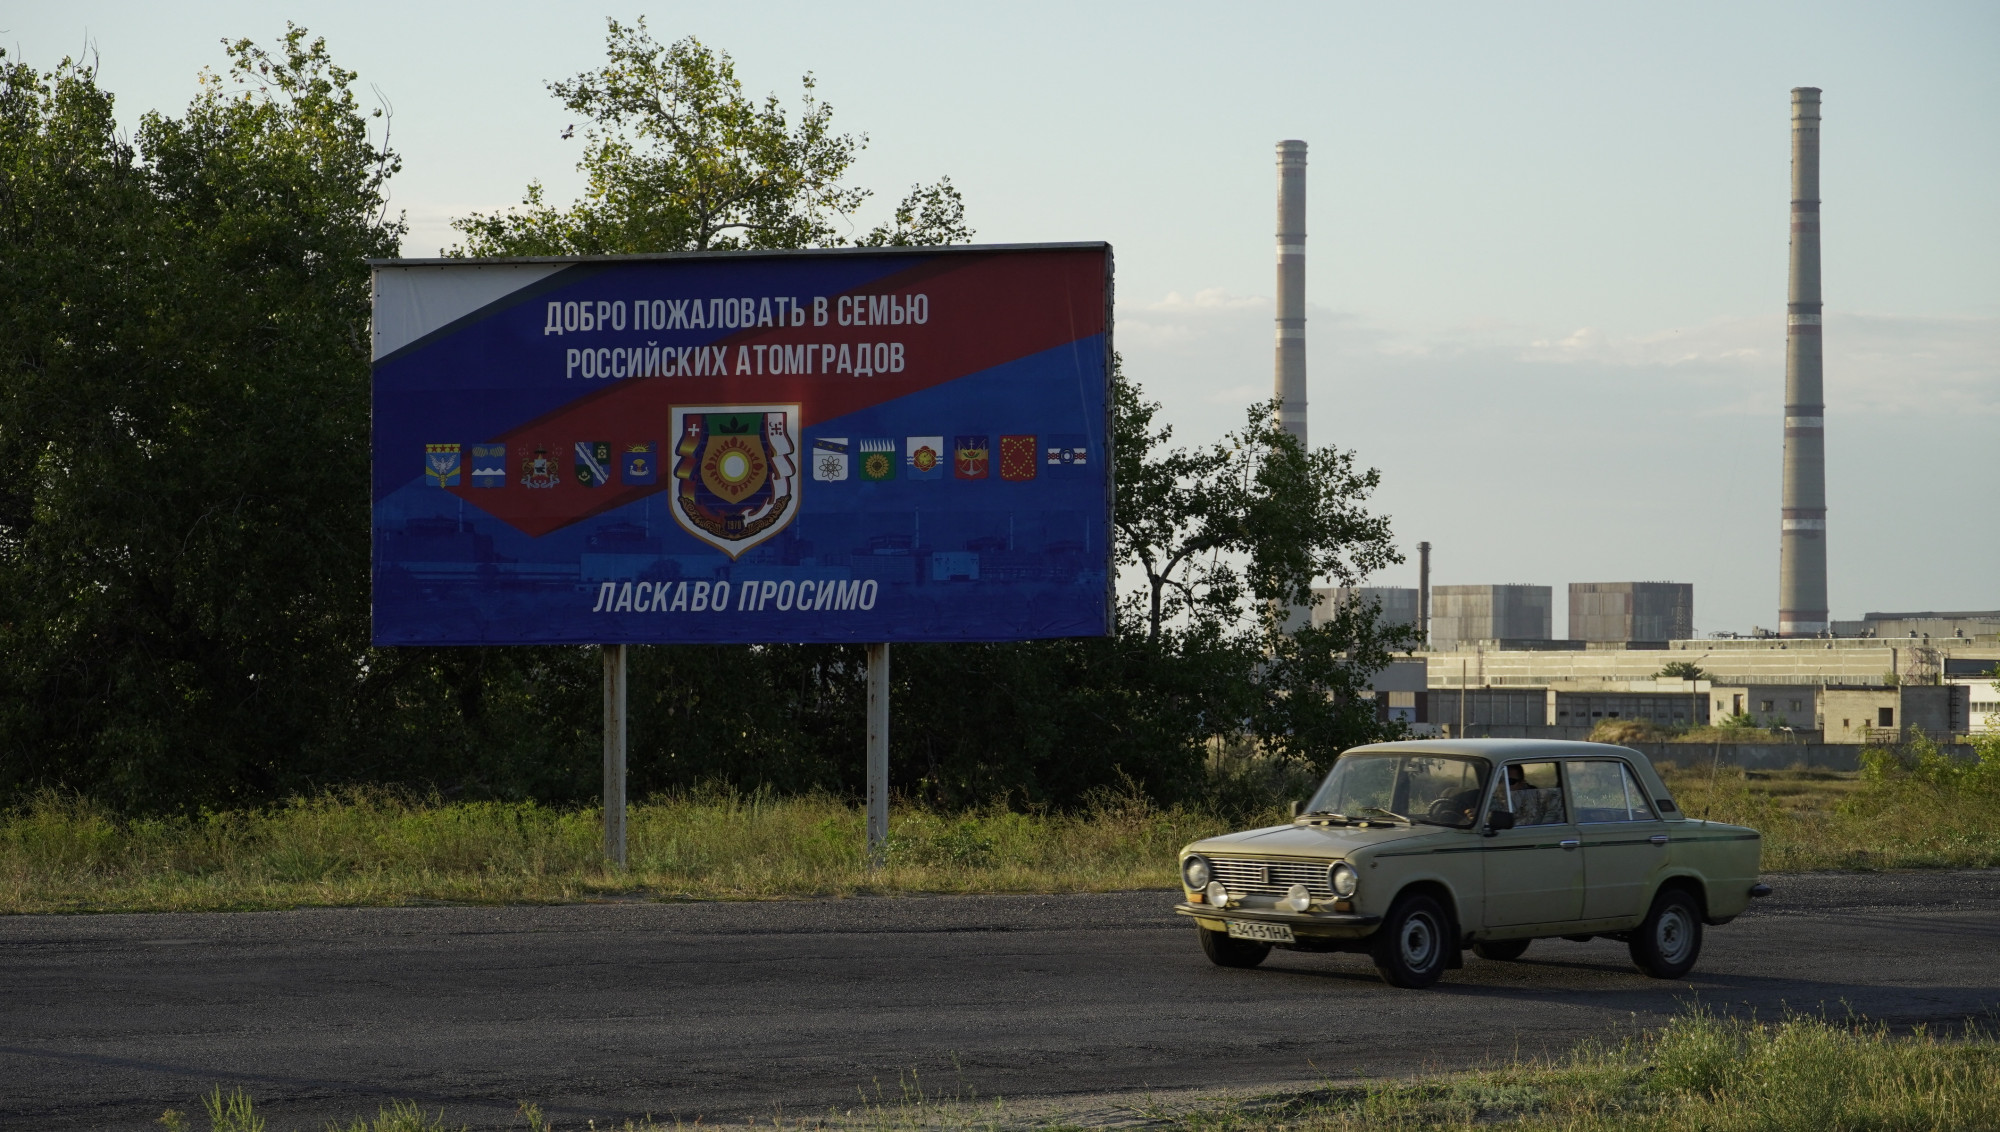 Megint áram nélkül maradt a zaporizzsjai atomerőmű